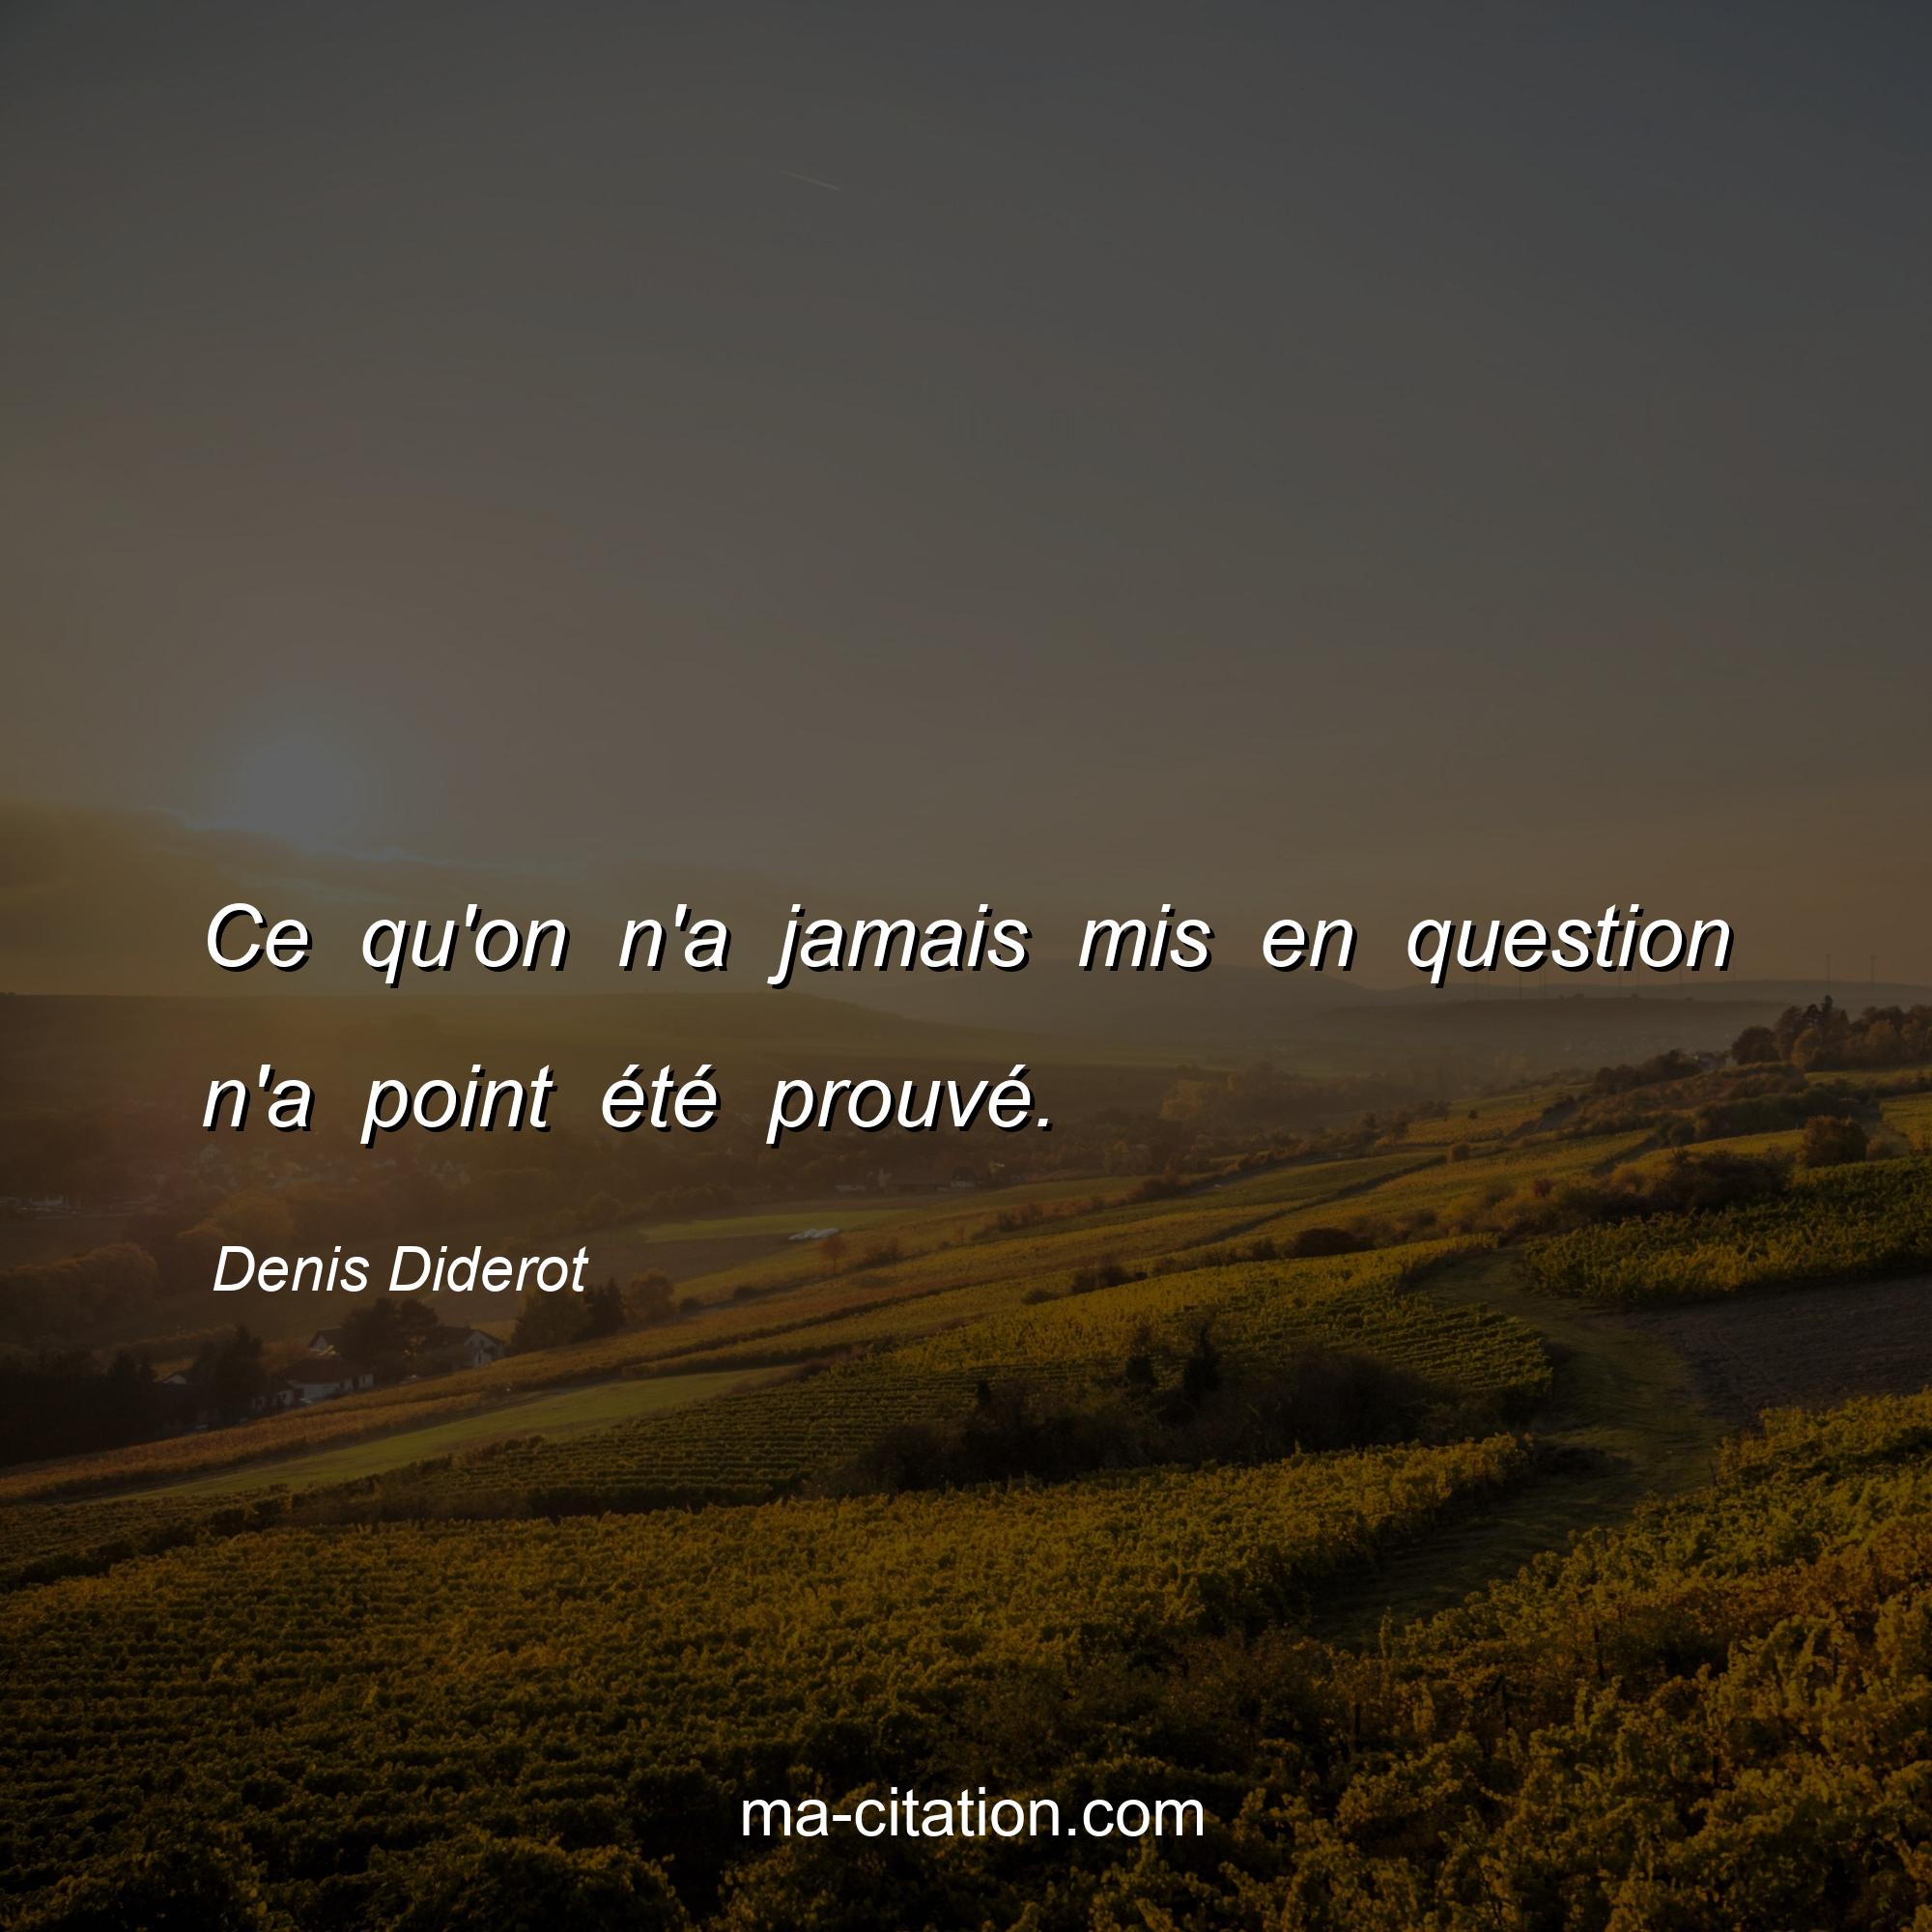 Denis Diderot : Ce qu'on n'a jamais mis en question n'a point été prouvé.